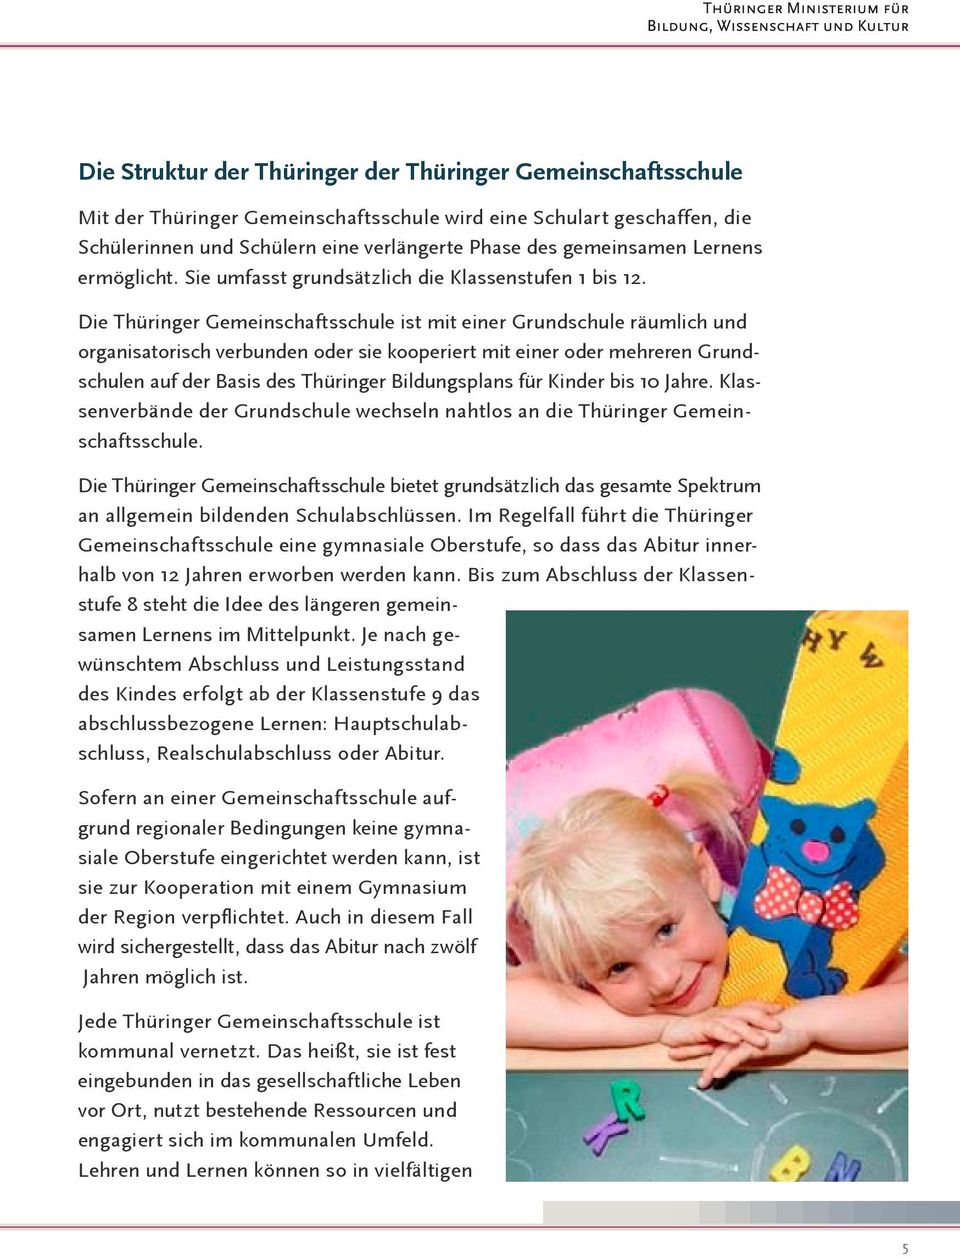 Die Thüringer Gemeinschaftsschule ist mit einer Grundschule räumlich und organisatorisch verbunden oder sie kooperiert mit einer oder mehreren Grundschulen auf der Basis des Thüringer Bildungsplans